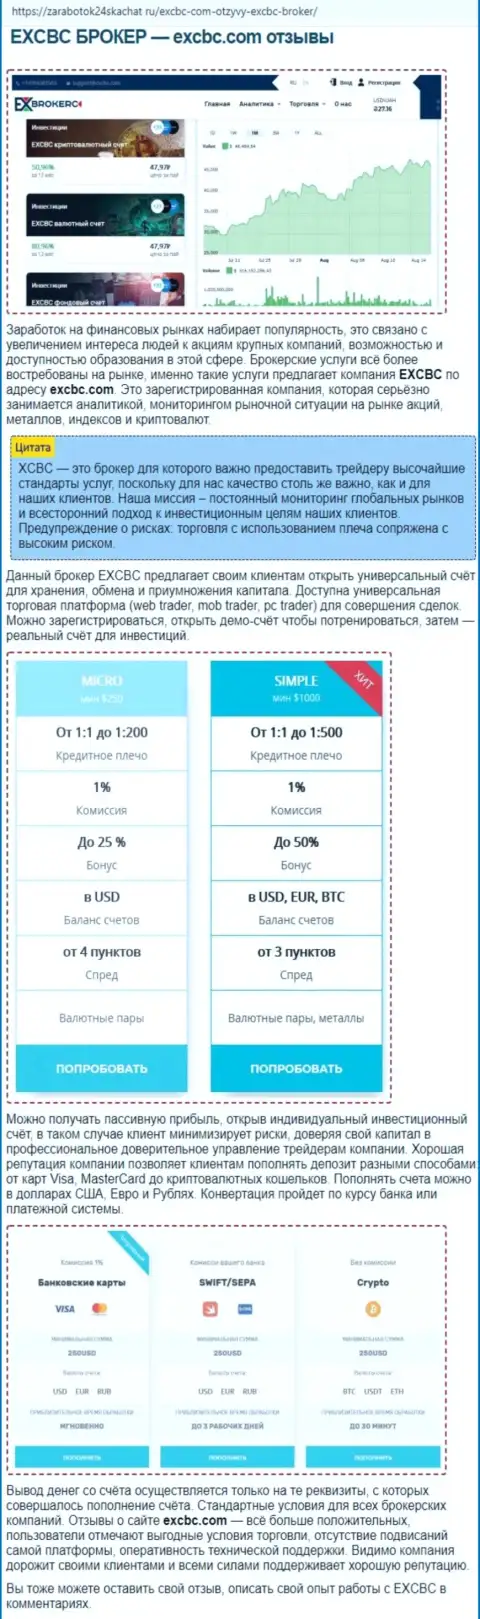 Сведения о FOREX дилинговом центре EXBrokerc в обзорной публикации на интернет-портале Zarabotok24Skachat Ru